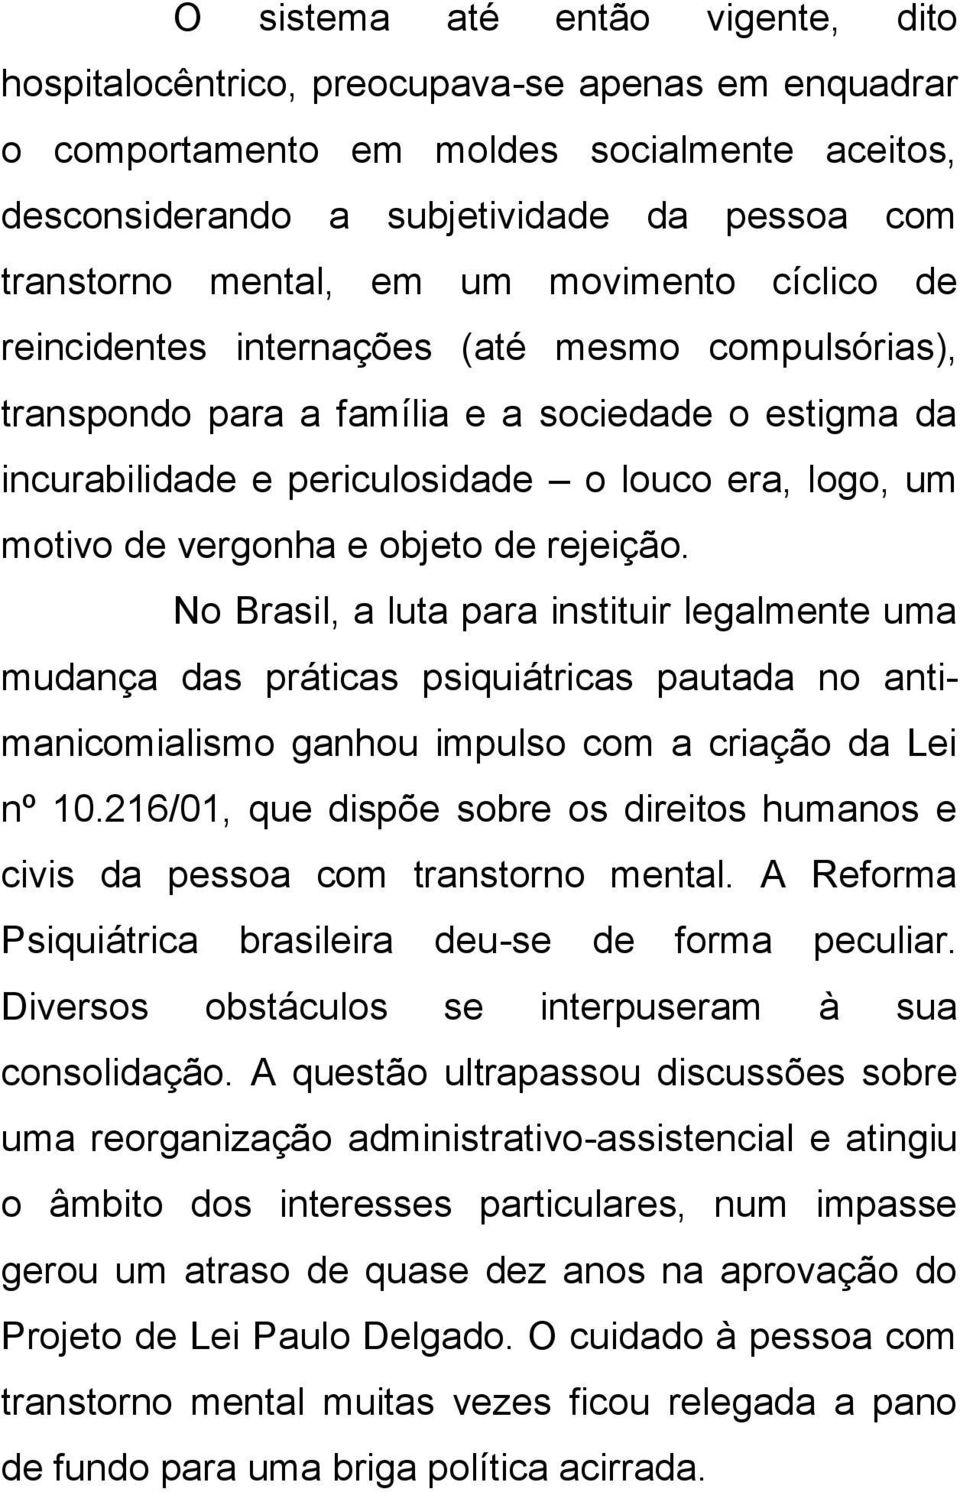 vergonha e objeto de rejeição. No Brasil, a luta para instituir legalmente uma mudança das práticas psiquiátricas pautada no antimanicomialismo ganhou impulso com a criação da Lei nº 10.